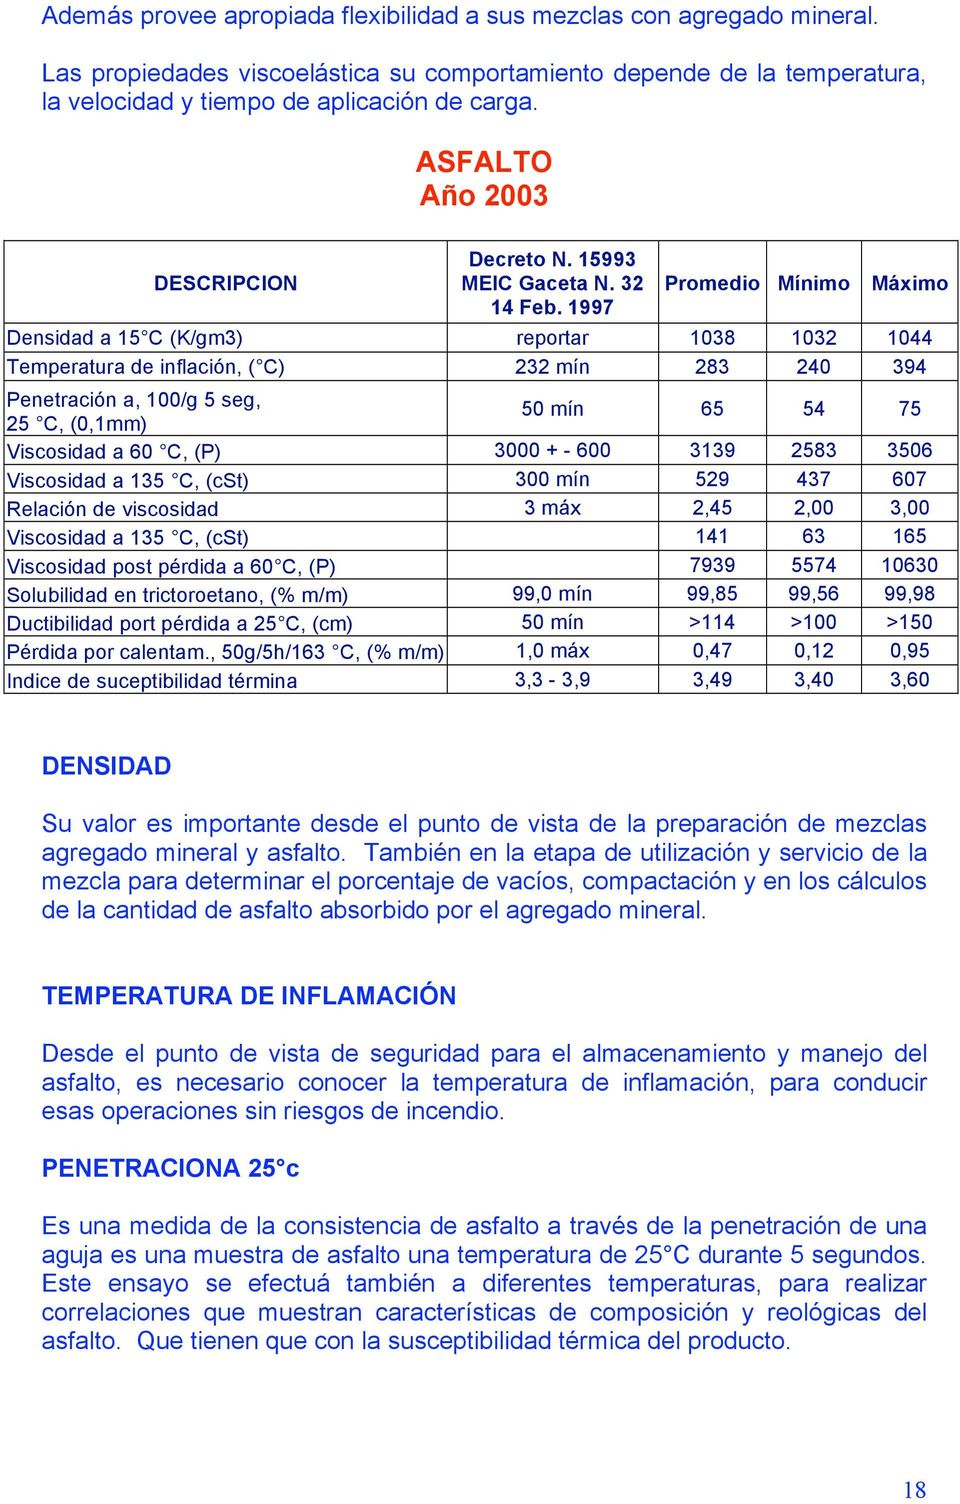 1997 Promedio Mínimo Máximo Densidad a 15 C (K/gm3) reportar 1038 1032 1044 Temperatura de inflación, ( C) 232 mín 283 240 394 Penetración a, 100/g 5 seg, 25 C, (0,1mm) 50 mín 65 54 75 Viscosidad a